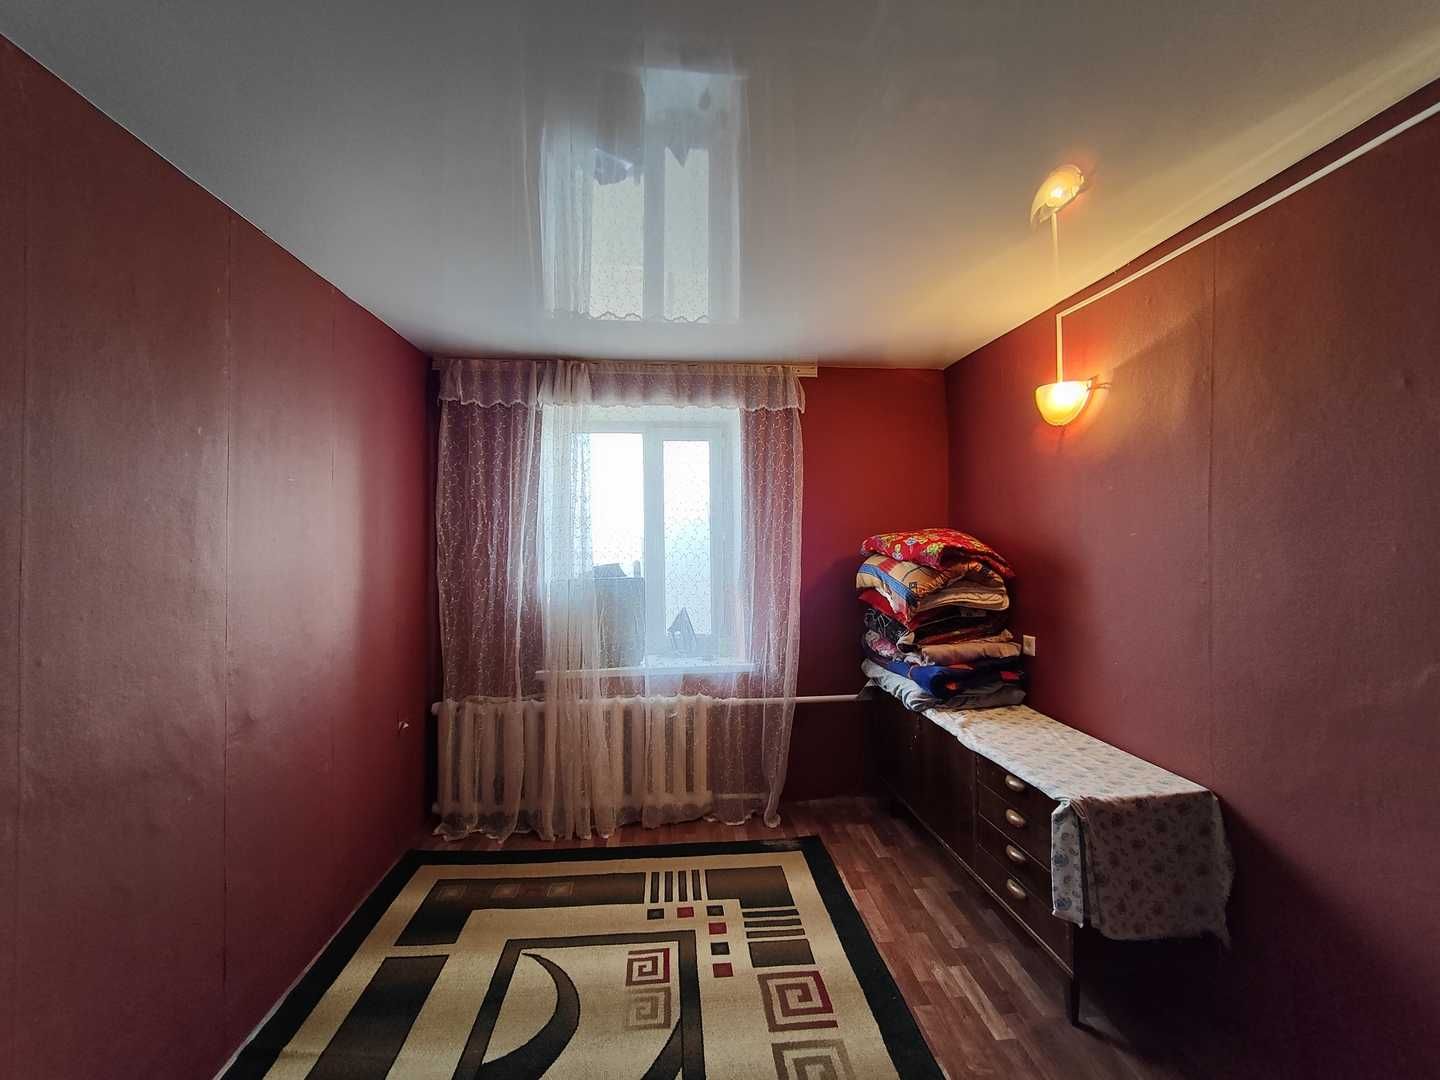 Продаётся 1 комнатный квартира по Санкибаю  26,9 м.кв.